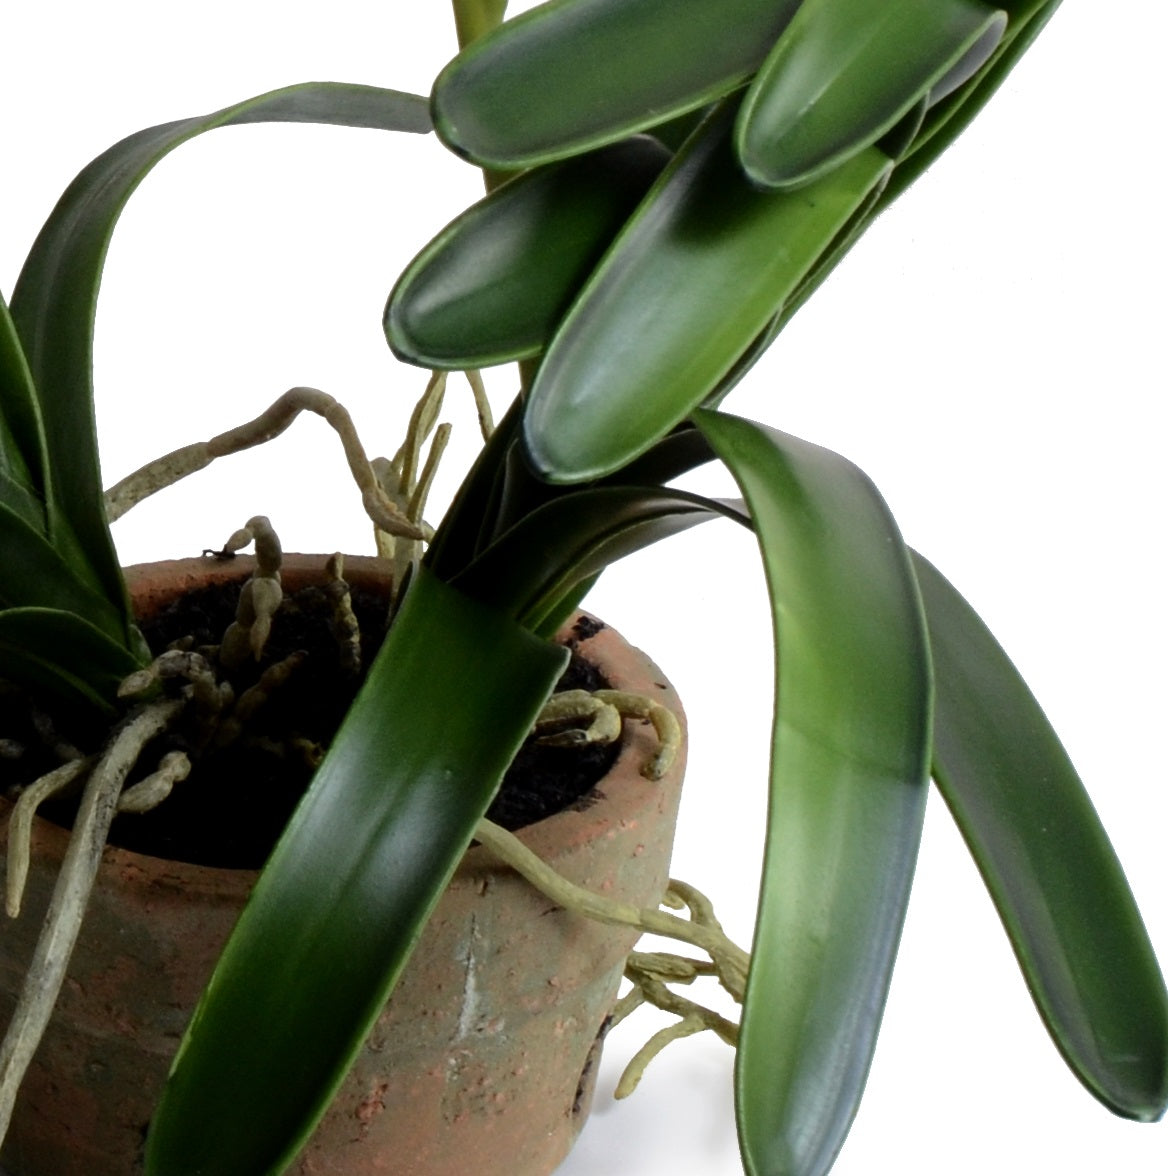 Vanda Orchid in Terracotta - Green